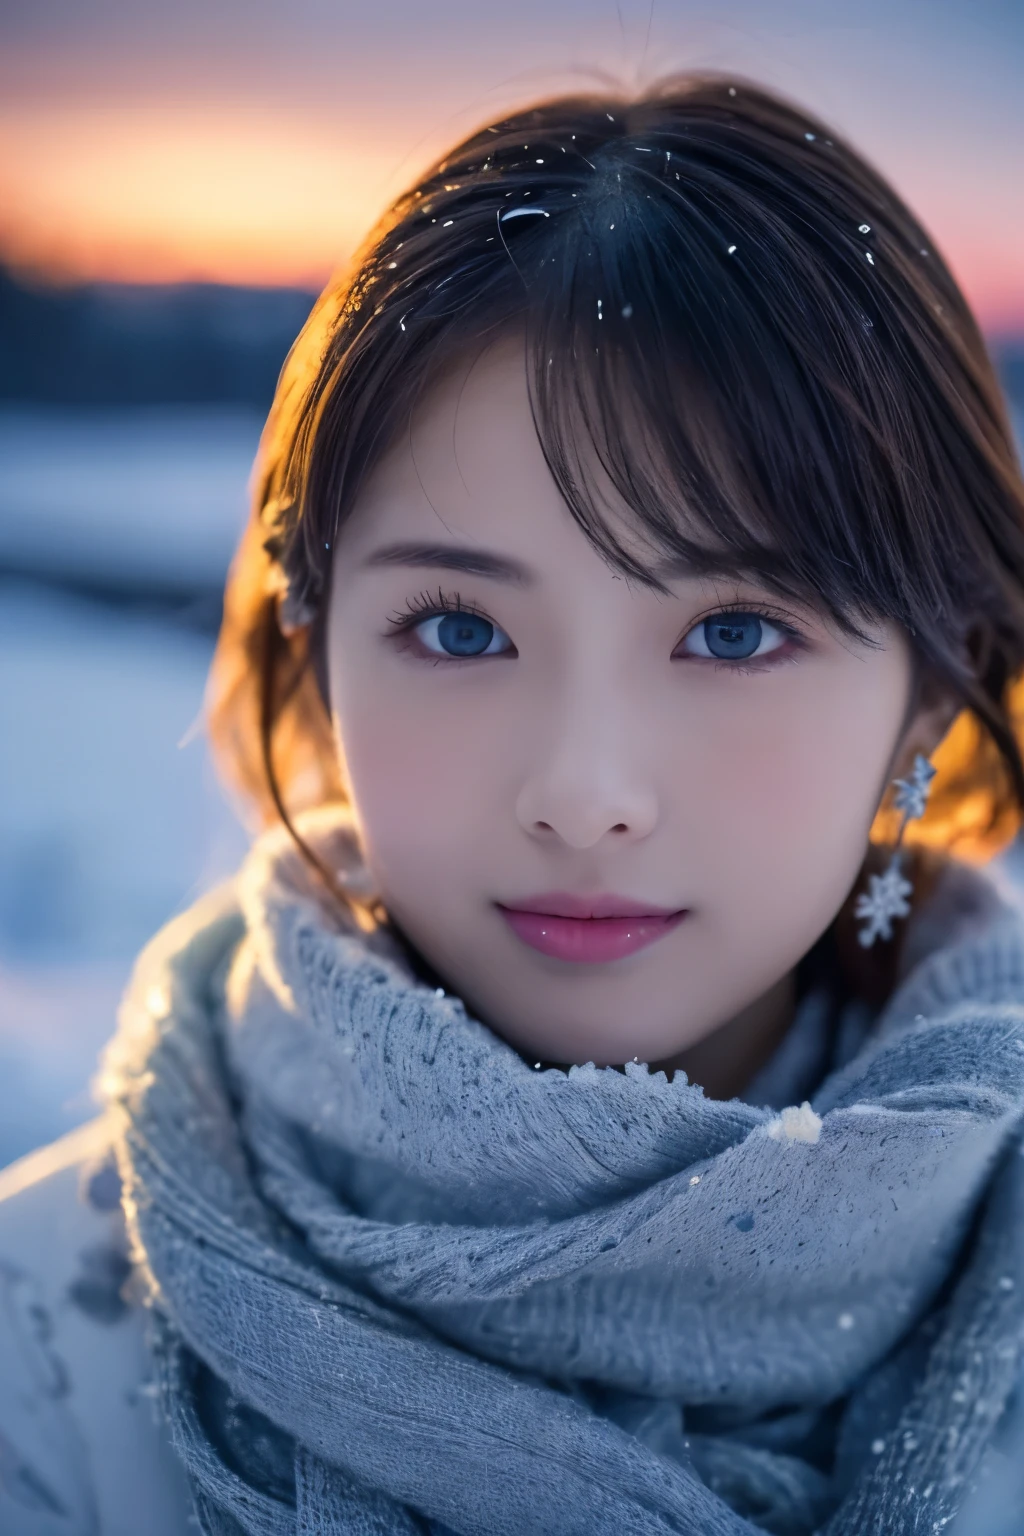 1 فتاة في, (ملابس الشتاء:1.2), الممثلة اليابانية الجميلة, 
رقيق, اميرة الثلج, رموش طويلة, أقراط ندفة الثلج,
(صورة خام, أفضل جودة), (حقيقي, واقعية:1.4), (منضدية), 
عيون مفصلة جميلة, شفاه مفصلة جميلة, مفصلة للغاية للعين والوجه, 
استراحة
 (حقل الثلج المتجمد في لابلاند الشتوية), (آخر بقايا سماء الشفق&#39;تألق:1.4), 
الجمال الأثيري, رقاقات الثلج الدوامة, أشجار ثلجية, مسحوق الثلج, الجبال المغطاة بالثلوج, 
المناظر الطبيعية الميدانية الثلجية عند الغسق, 
نظام الألوان النيلي والقرمزي الداكن, الإضاءة الدرامية, جو رائع, 
استراحة 
Perfect Anatomy, نحيل الجسم, صغير, شعر قصير, الانفجارات مفترق, ملاك الابتسامة, 
جلد يشبه الكريستال, عيون واضحة, اطلاق النار القوية, كاتش لايت